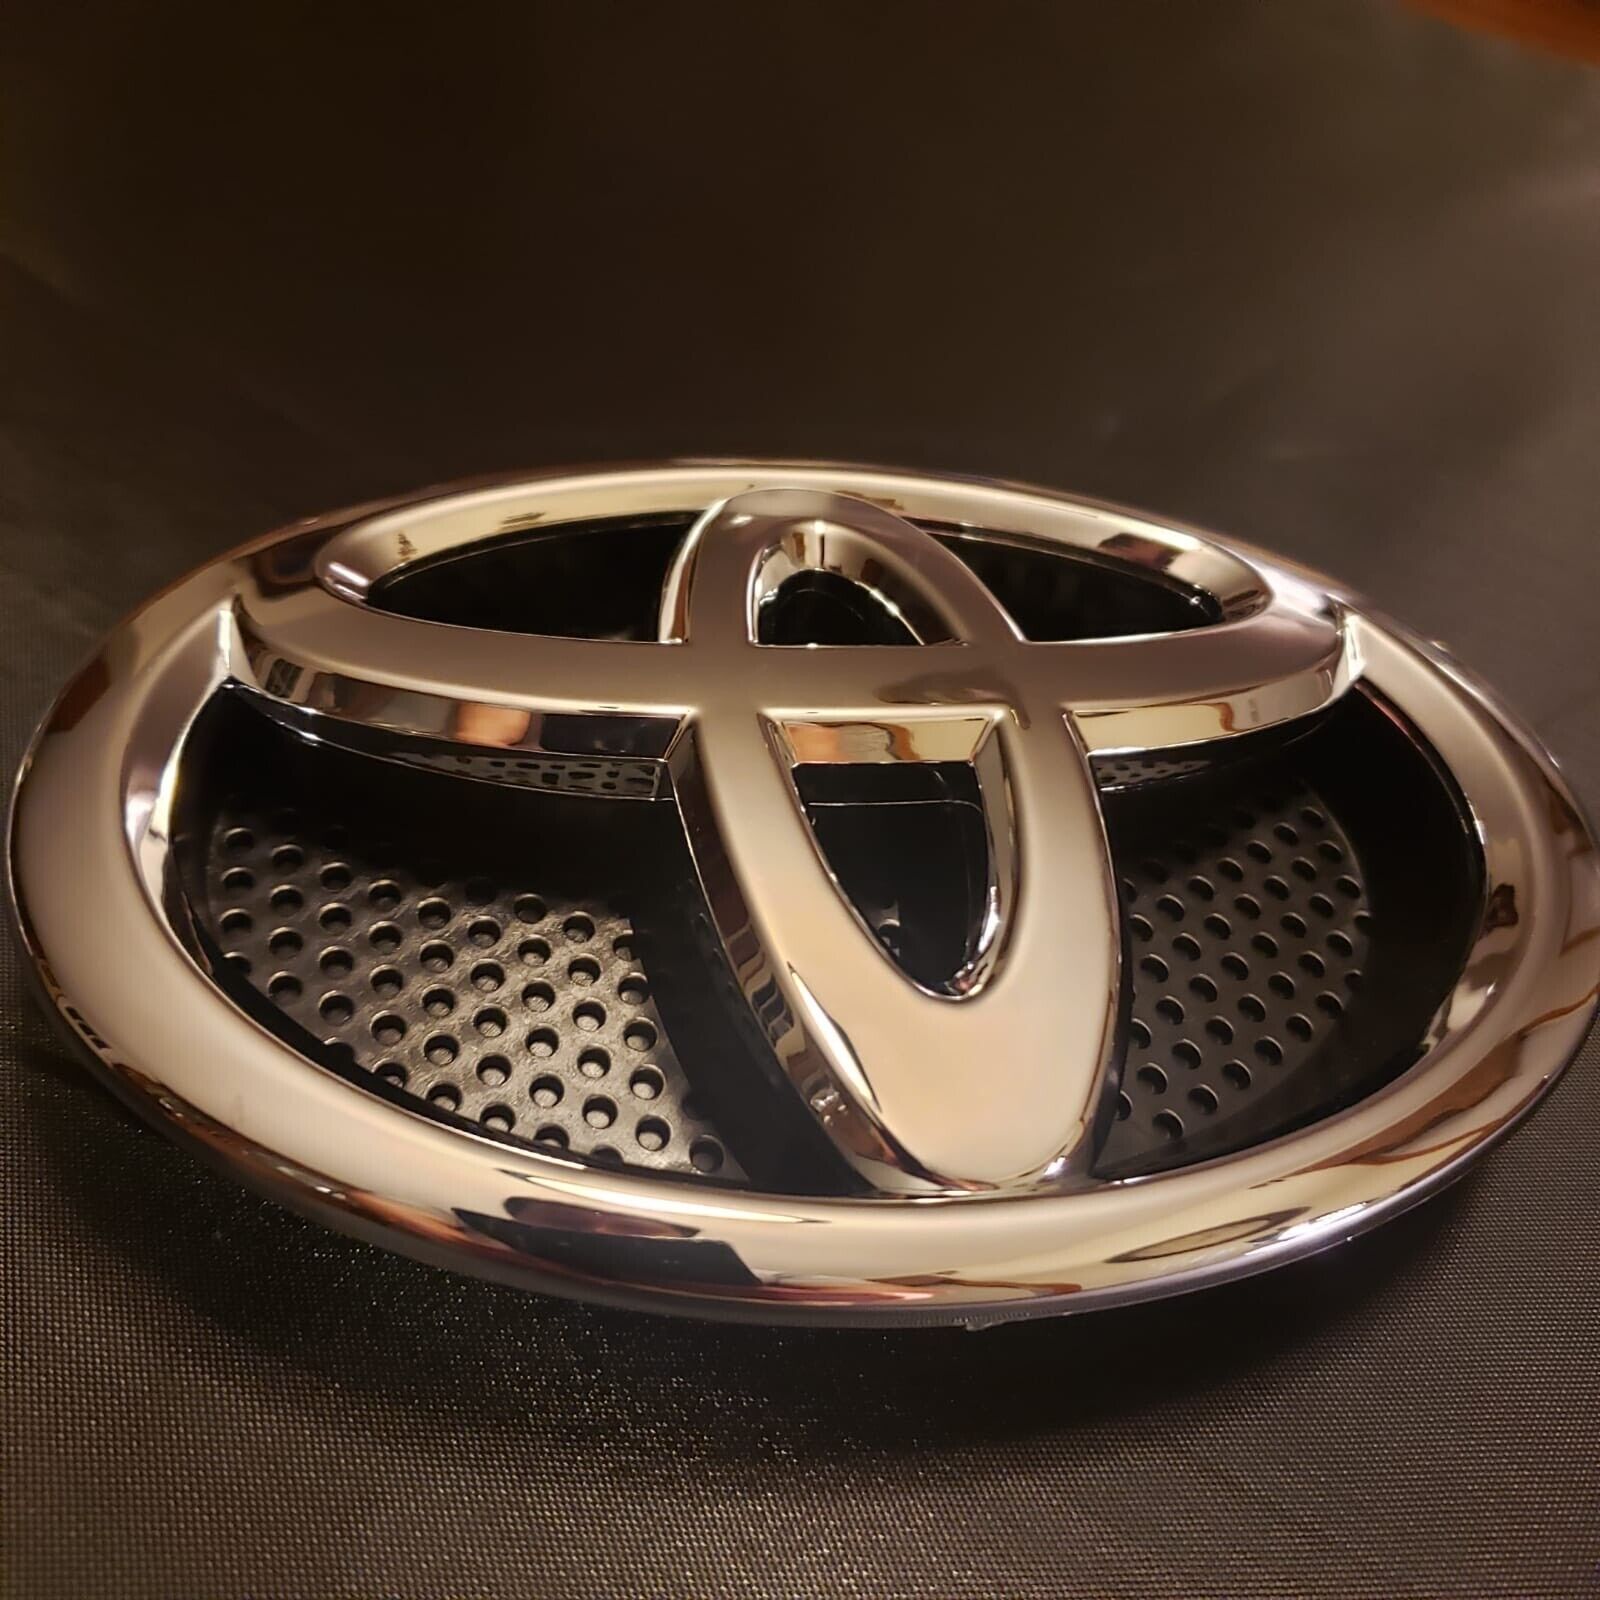 Toyota RAV4 Front Grille Emblem 2013 2014 2015